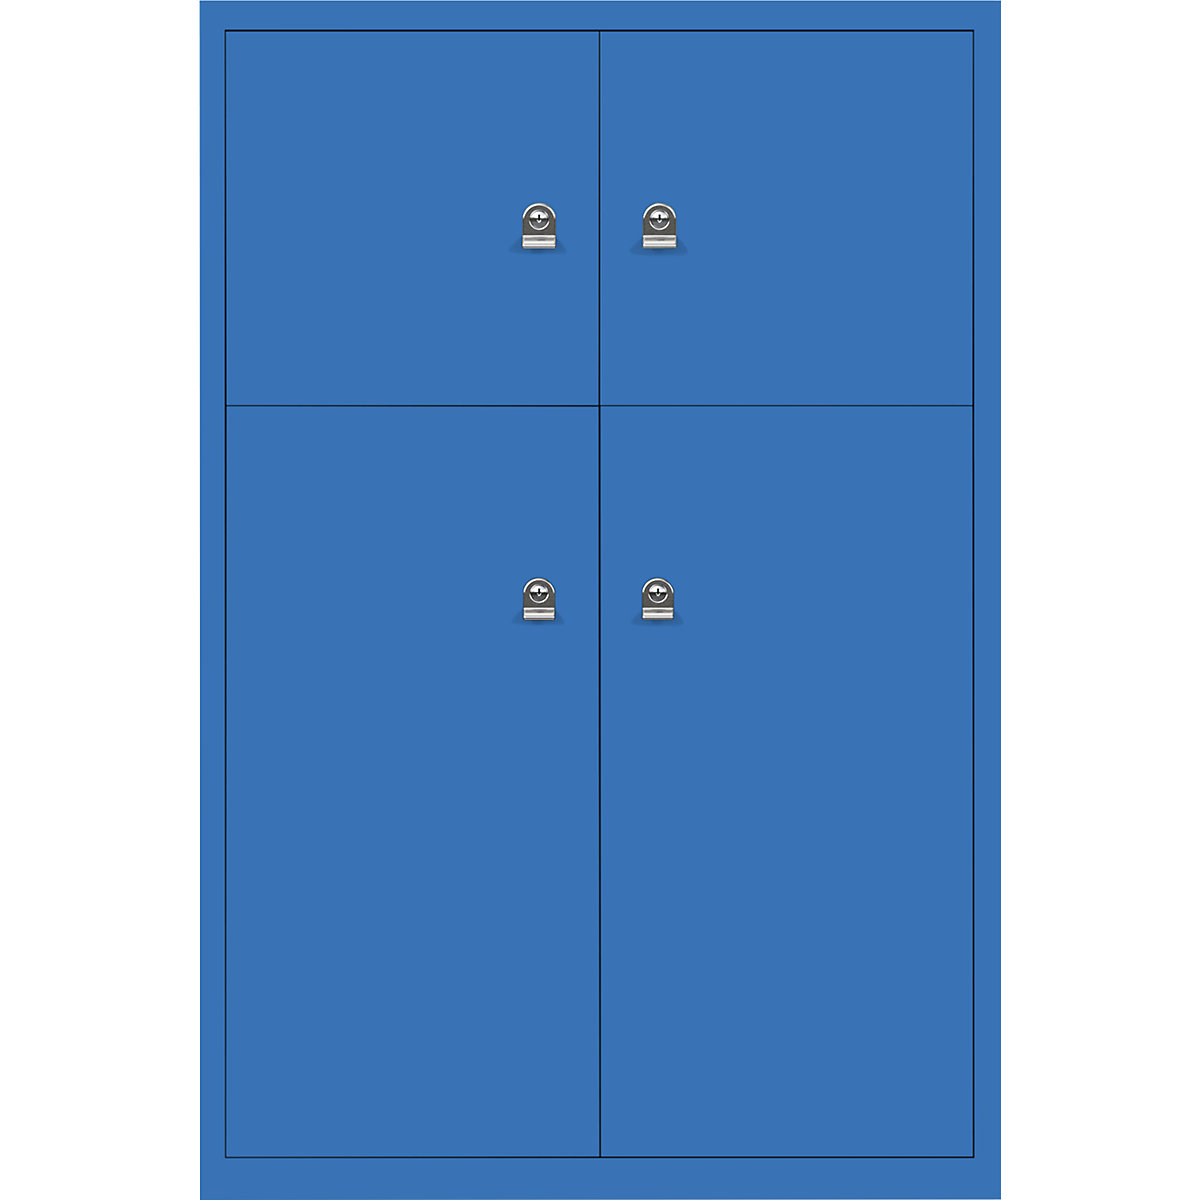 Omara s predelki z zaklepanjem LateralFile™ – BISLEY, 4 predelki z zaklepanjem, višina 2 x 375 mm, 2 x 755 mm, modre barve-27